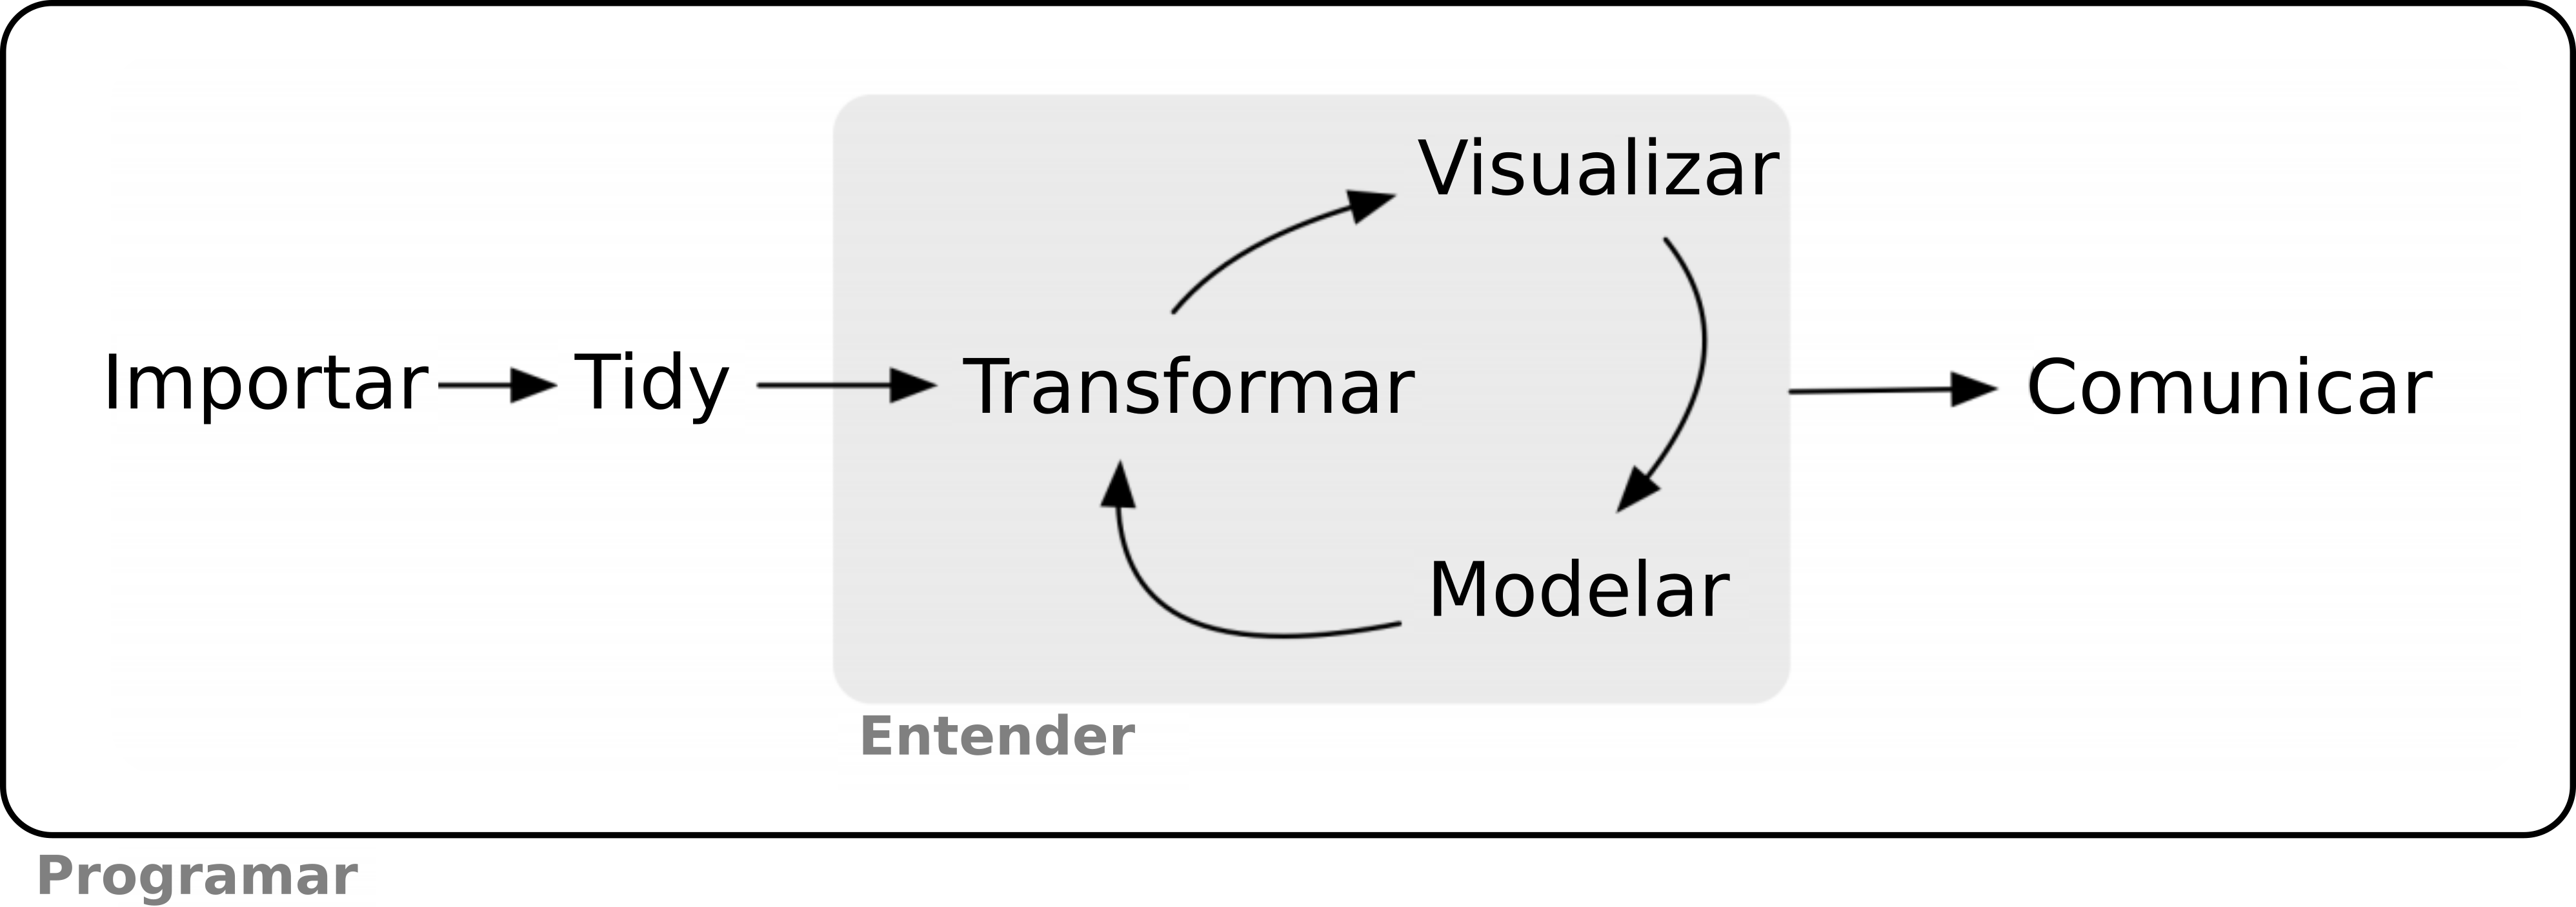 Modelo das ferramentas necessárias em um projeto típico de ciência de dados: importar, organizar, entender (transformar, visualizar, modelar) e comunicar, envolto à essas ferramentas está a programação. Adaptado de: Wickham & Grolemund [-@wickham2017].